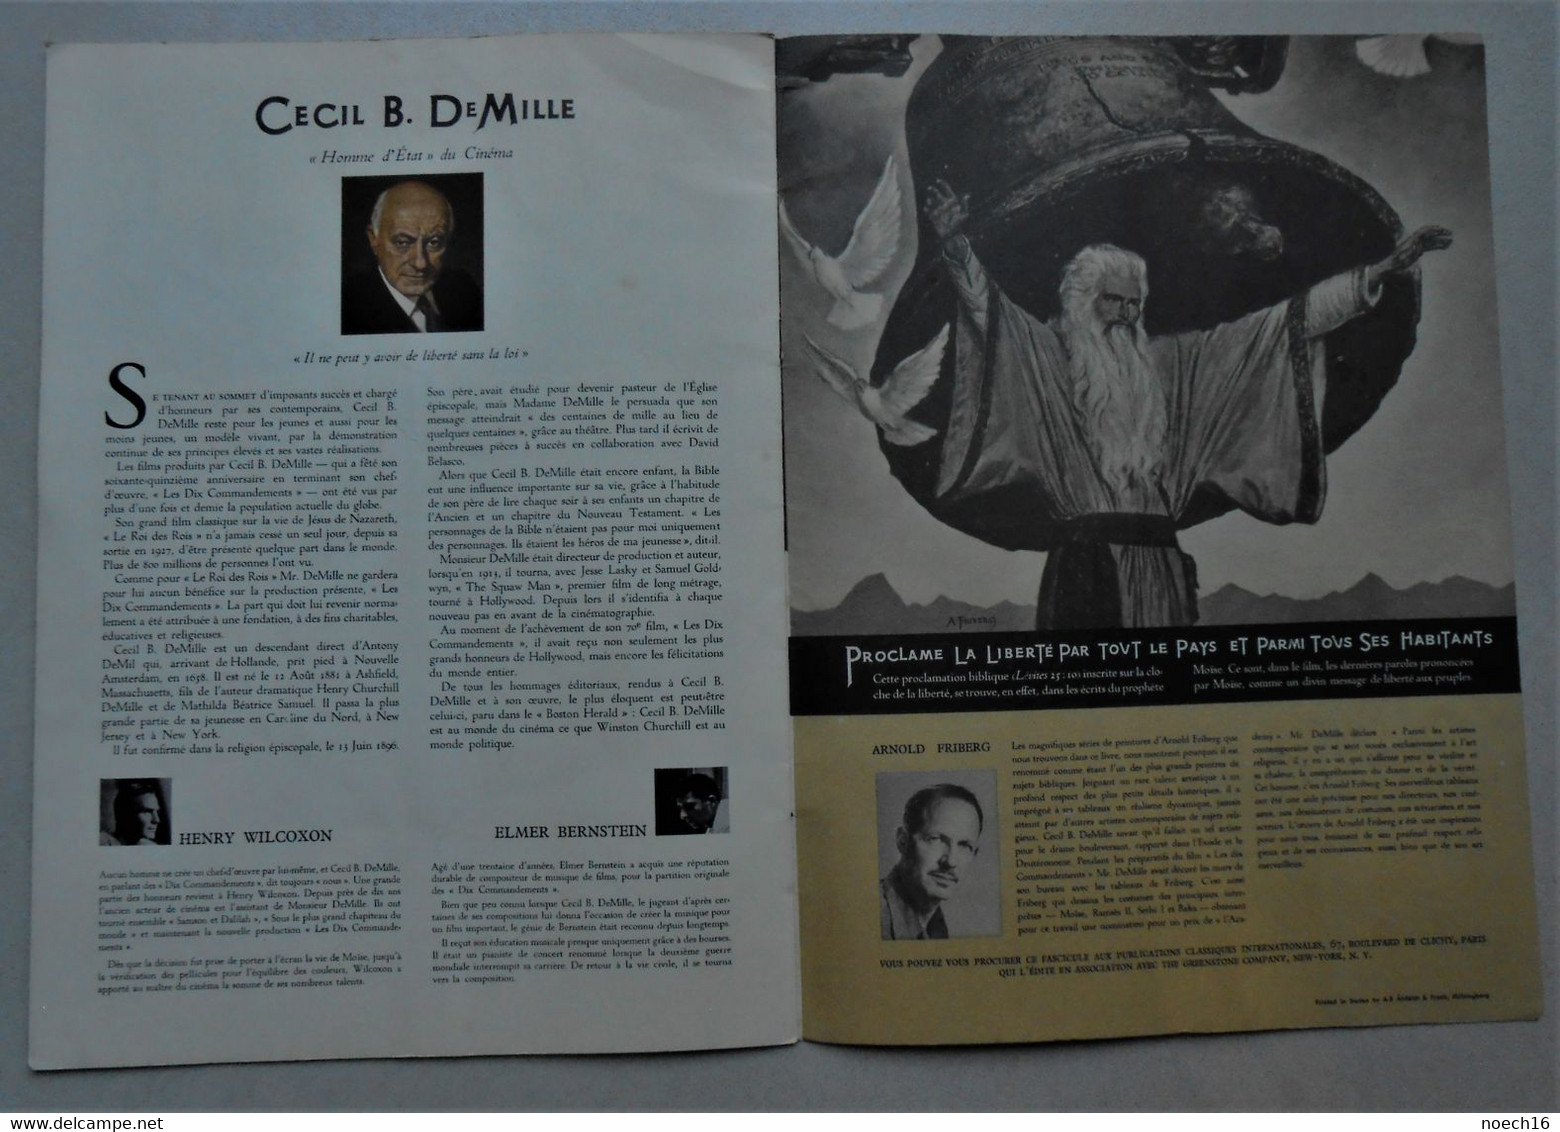 Les Dix Commandements Charlton Heston- Cecil B. De Mille  Brochure promotionnelle du film 1957 en français